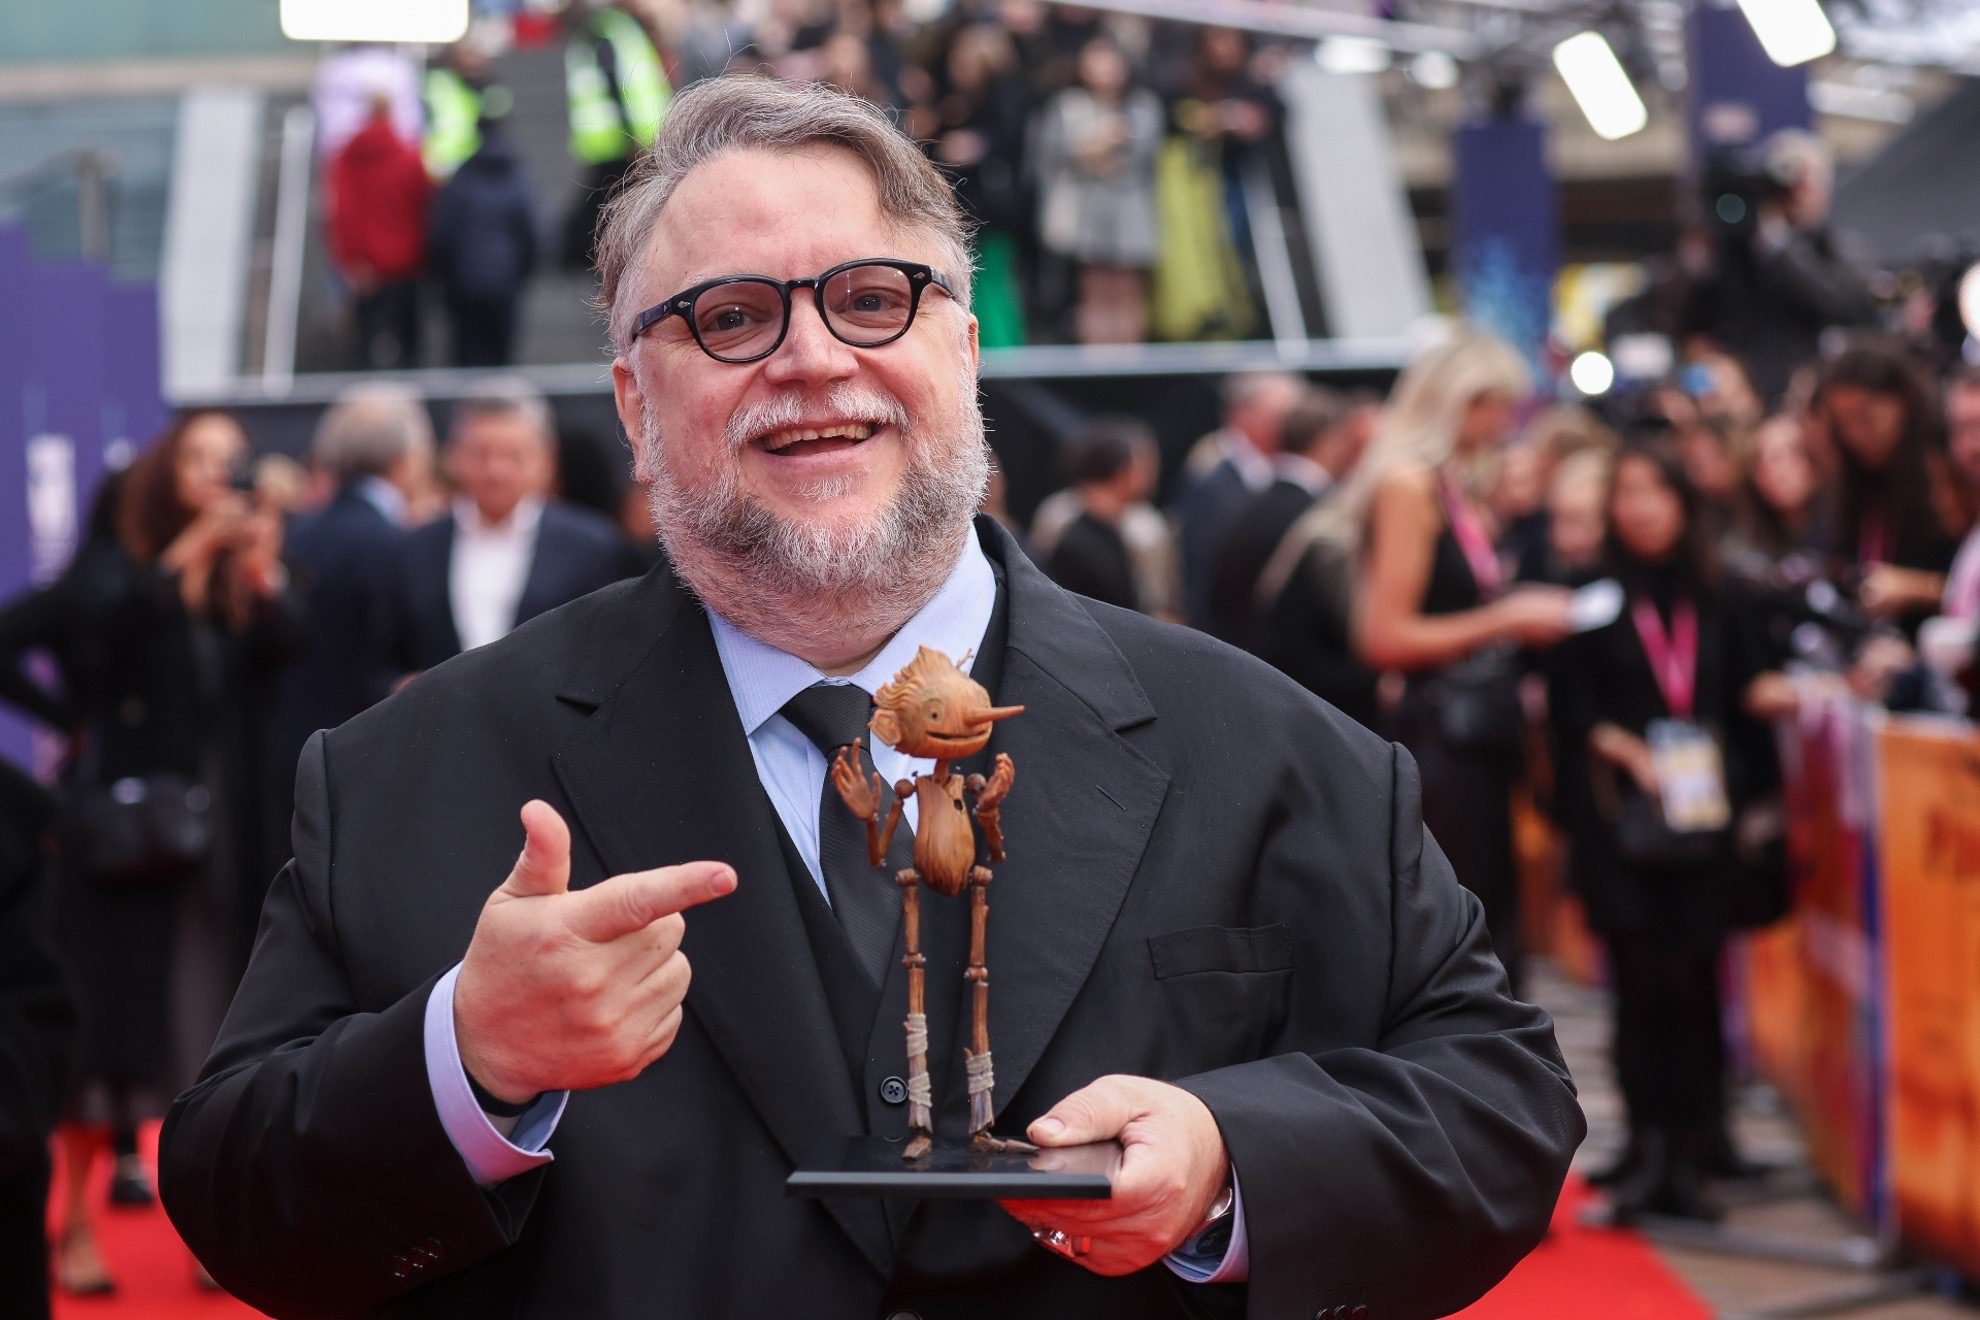 Guillermo del Toro’s net worth